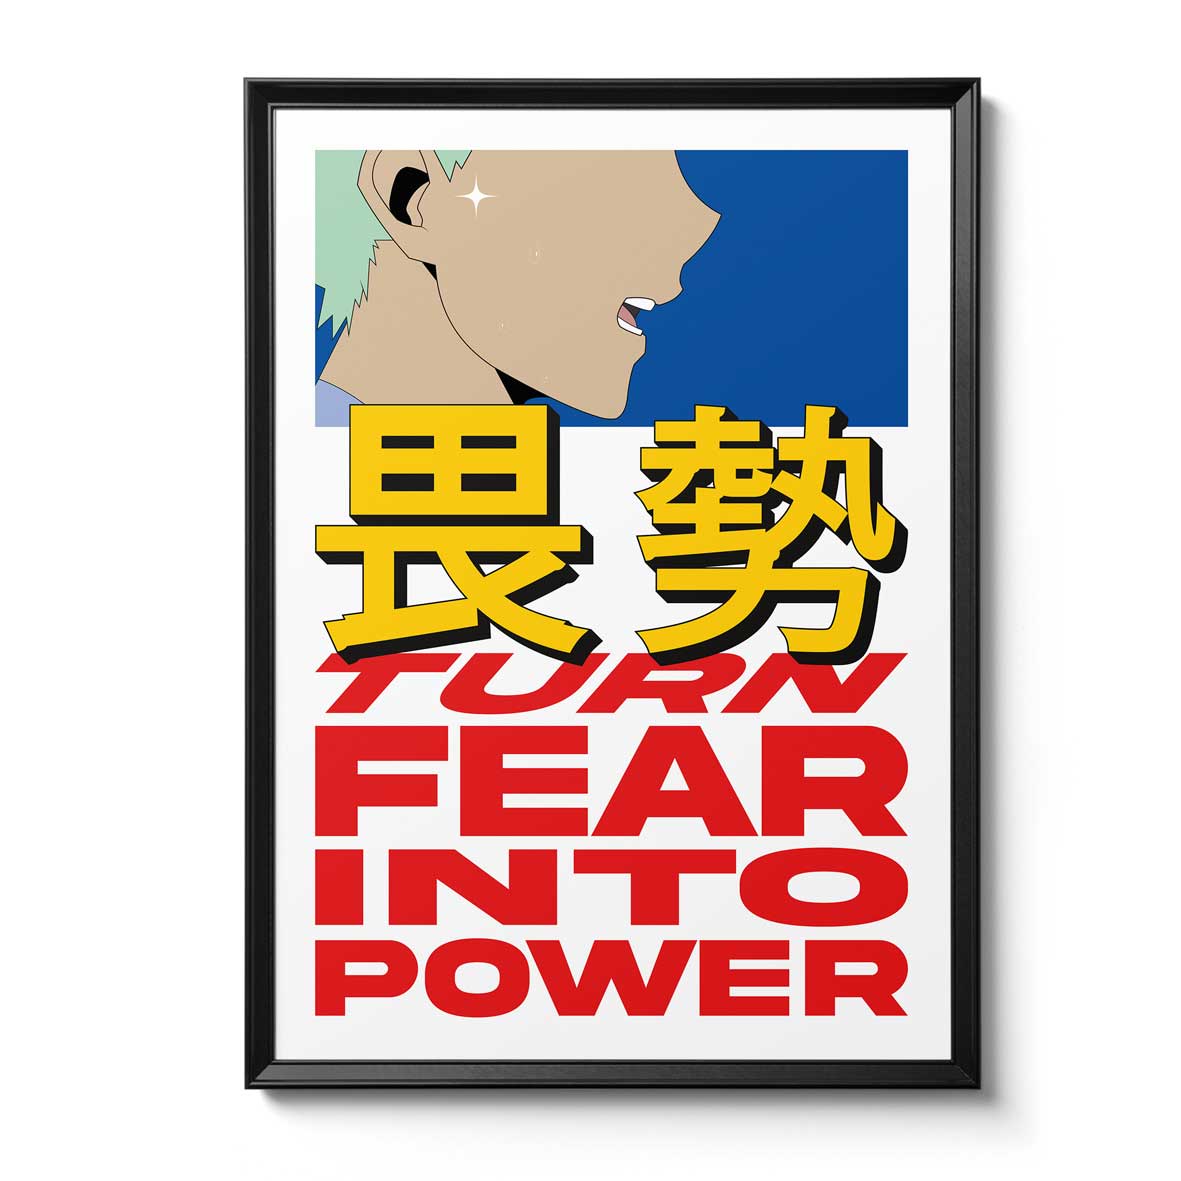 Fine-Art Print "FEAR TO POWER"